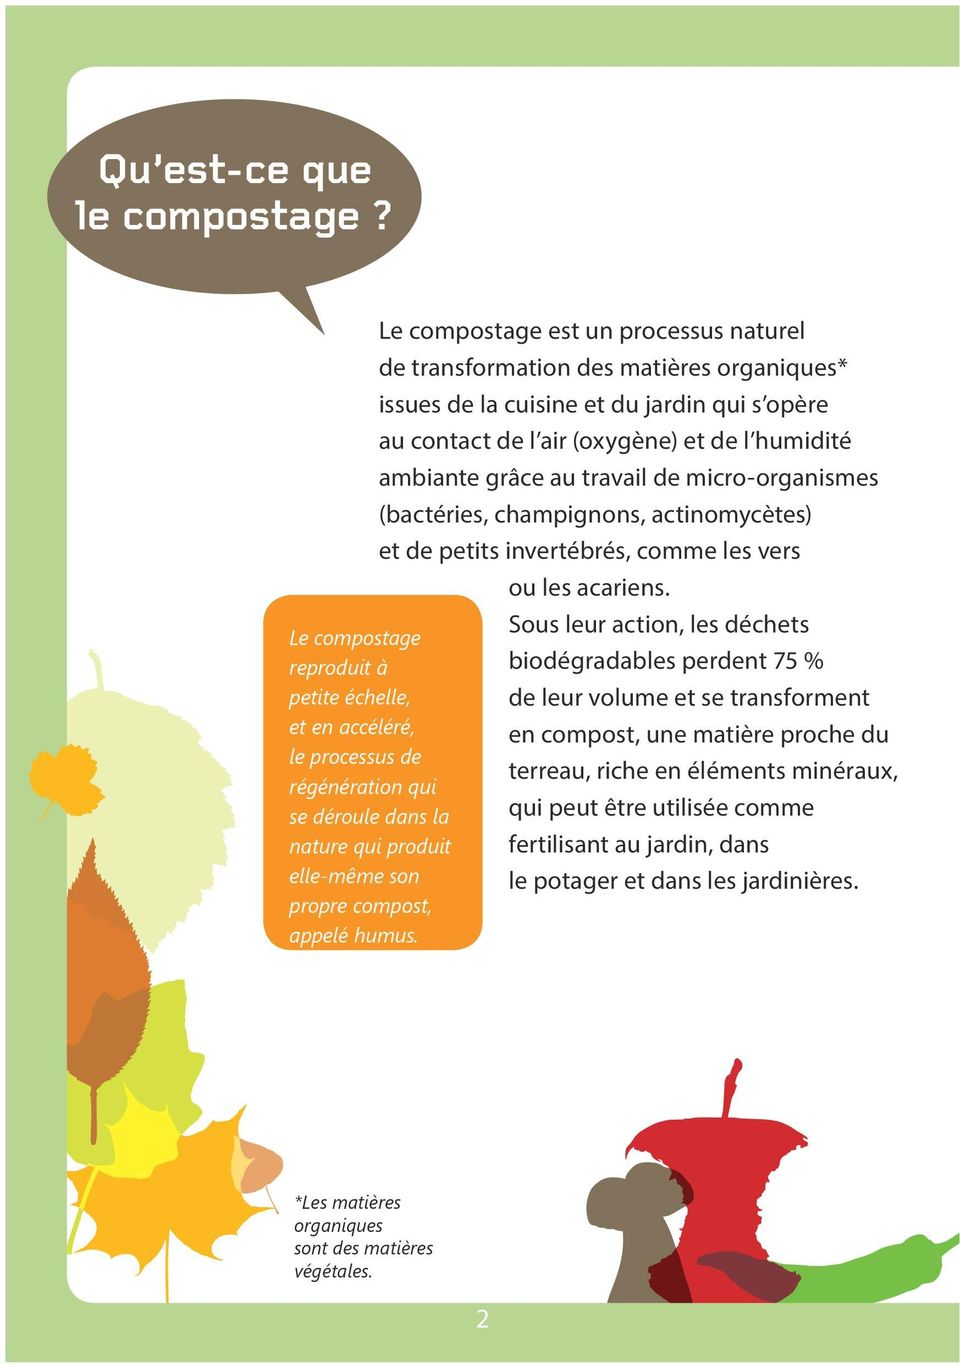 Le compostage est un processus naturel de transformation des matières organiques* issues de la cuisine et du jardin qui s opère au contact de l air (oxygène) et de l humidité ambiante grâce au